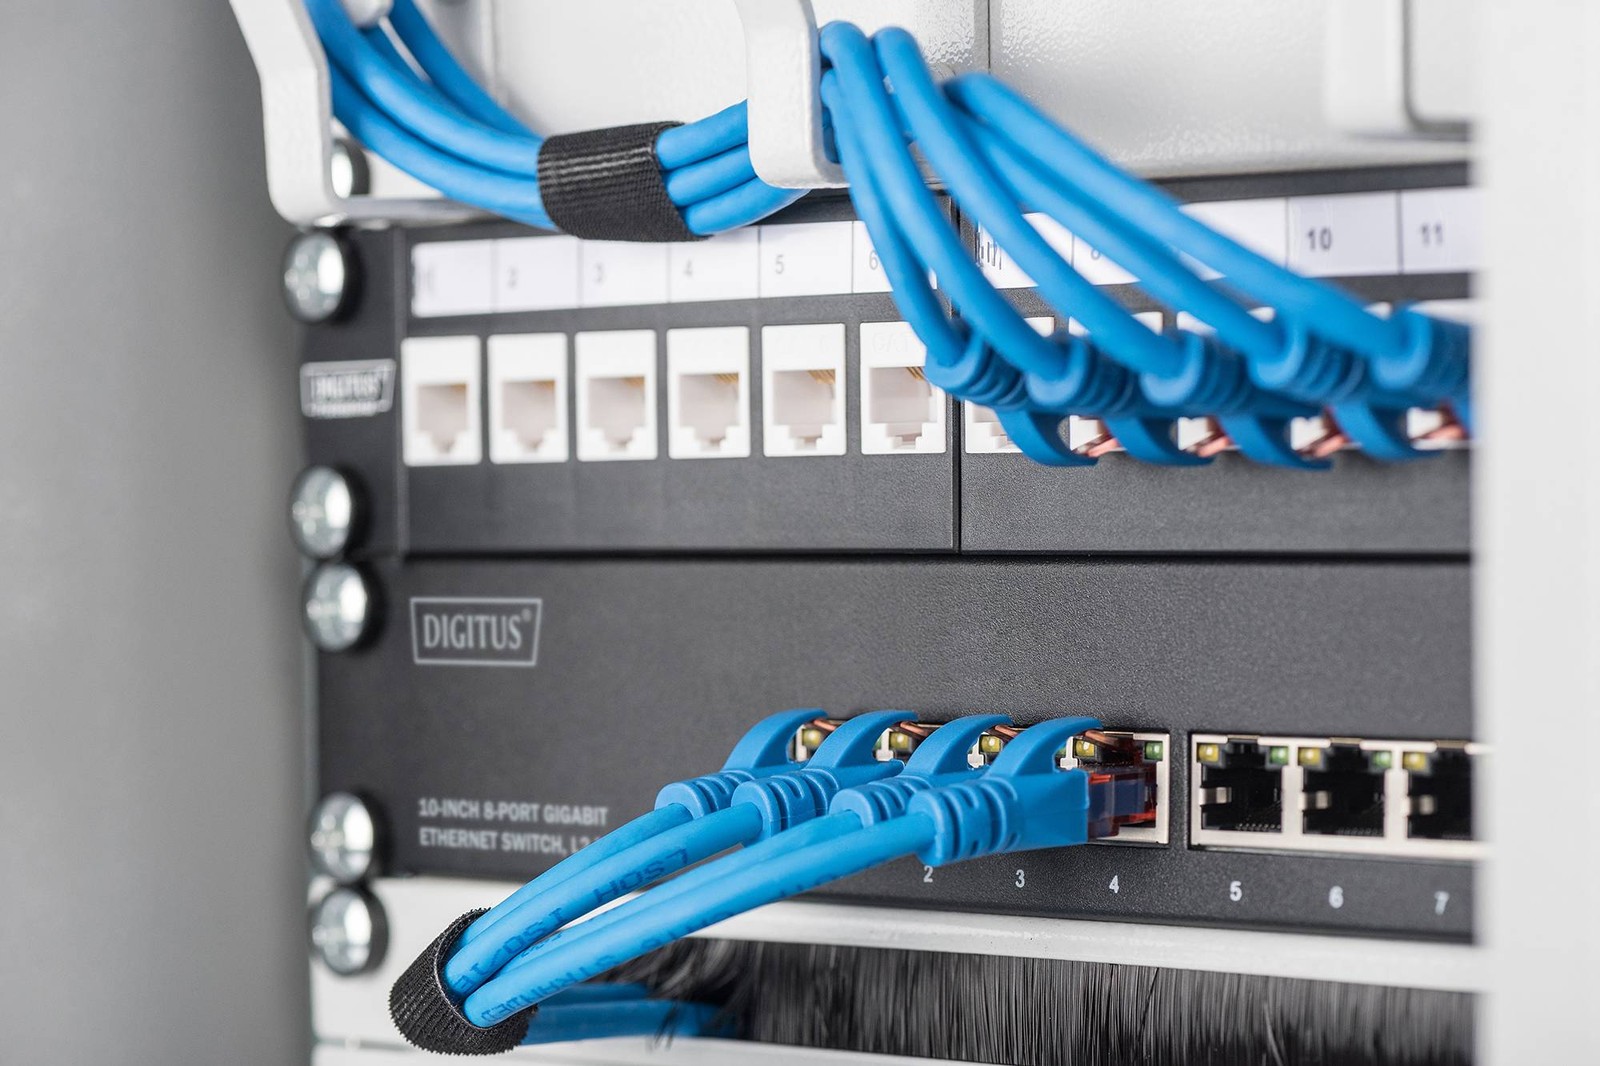 Kompakt und flexibel: Drei neue 10-Zoll-Switches von Digitus ergänzen das Conrad-Sortiment. Sie eignen sich für kleine, eigenständige Netzwerkumgebungen oder als Teil einer komplexen Infrastruktur.